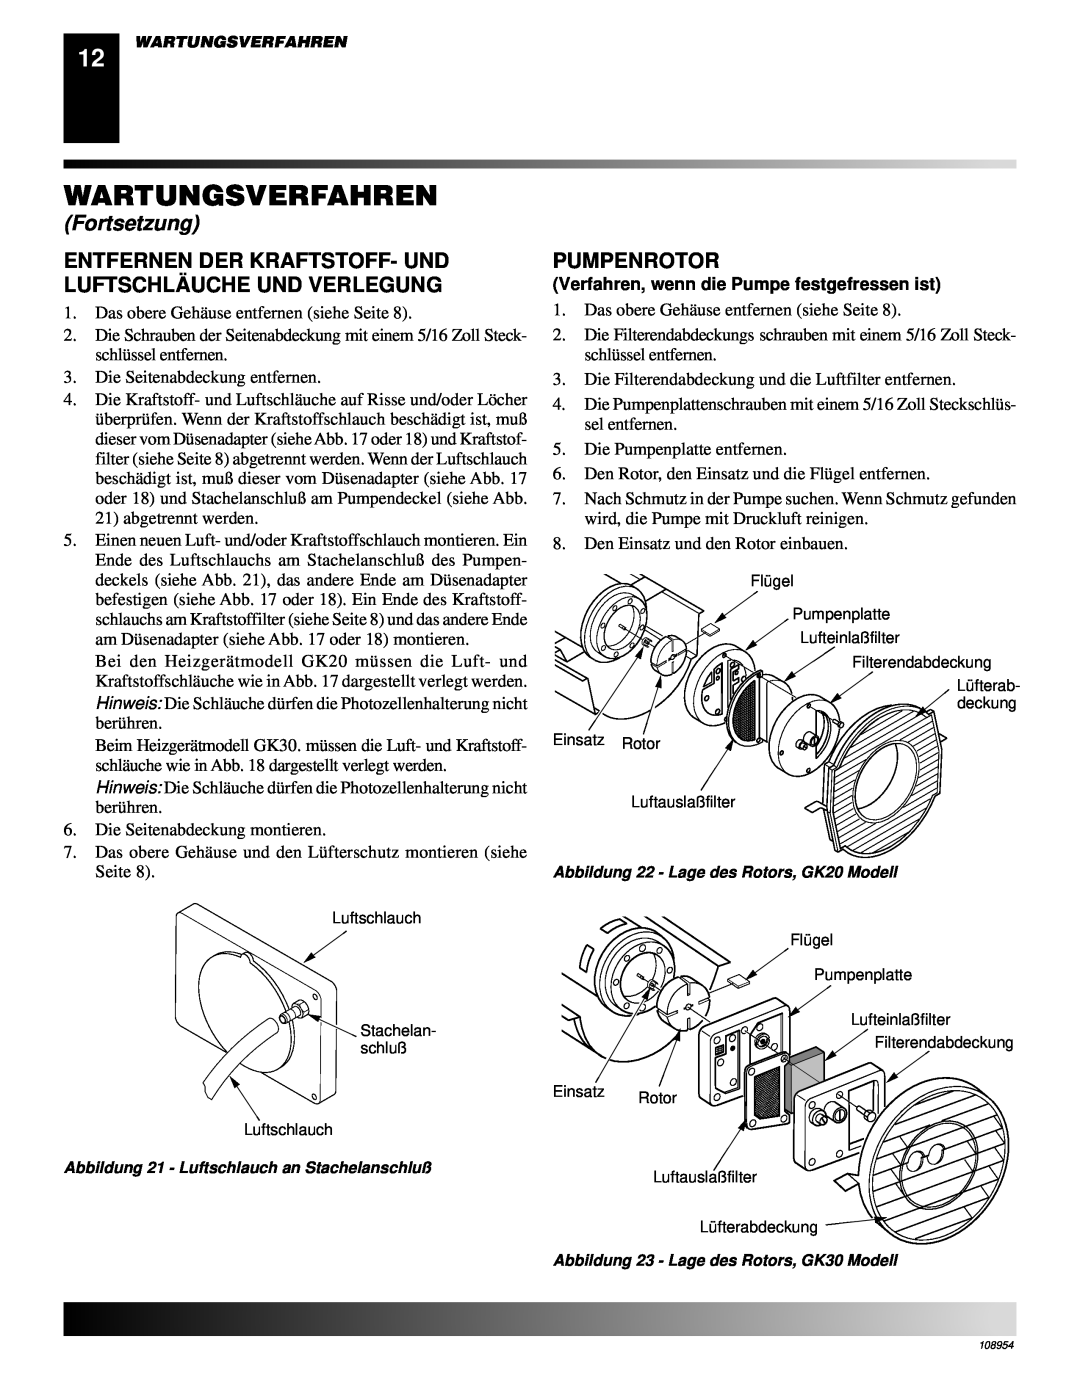 Desa GK20, GK30 owner manual Pumpenrotor, Wartungsverfahren, Fortsetzung, Verfahren, wenn die Pumpe festgefressen ist 